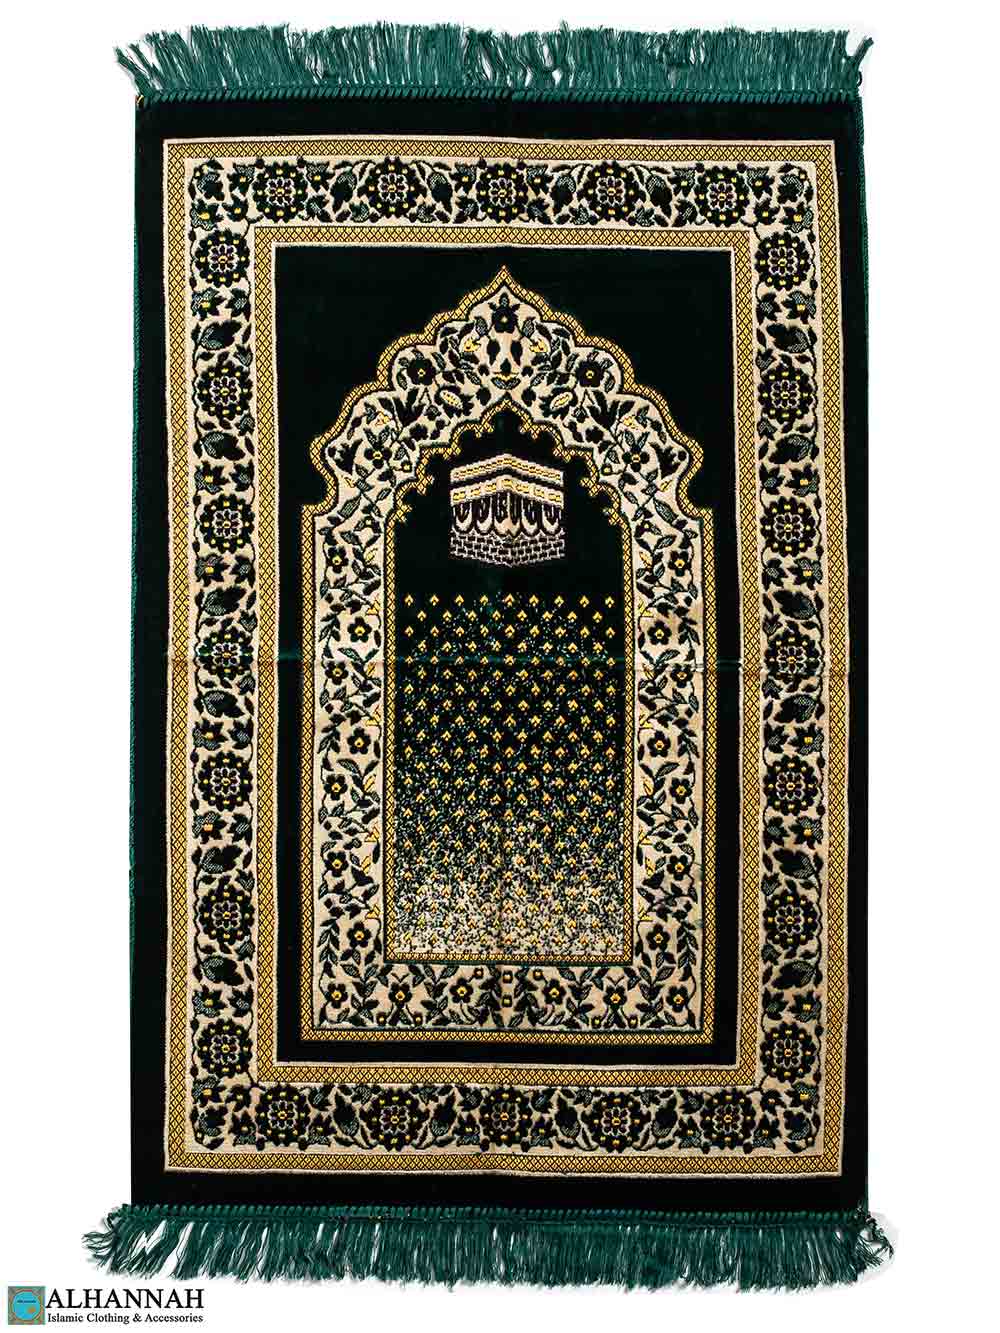 Turkish Prayer Rug with Kaaba Motif - Emerald